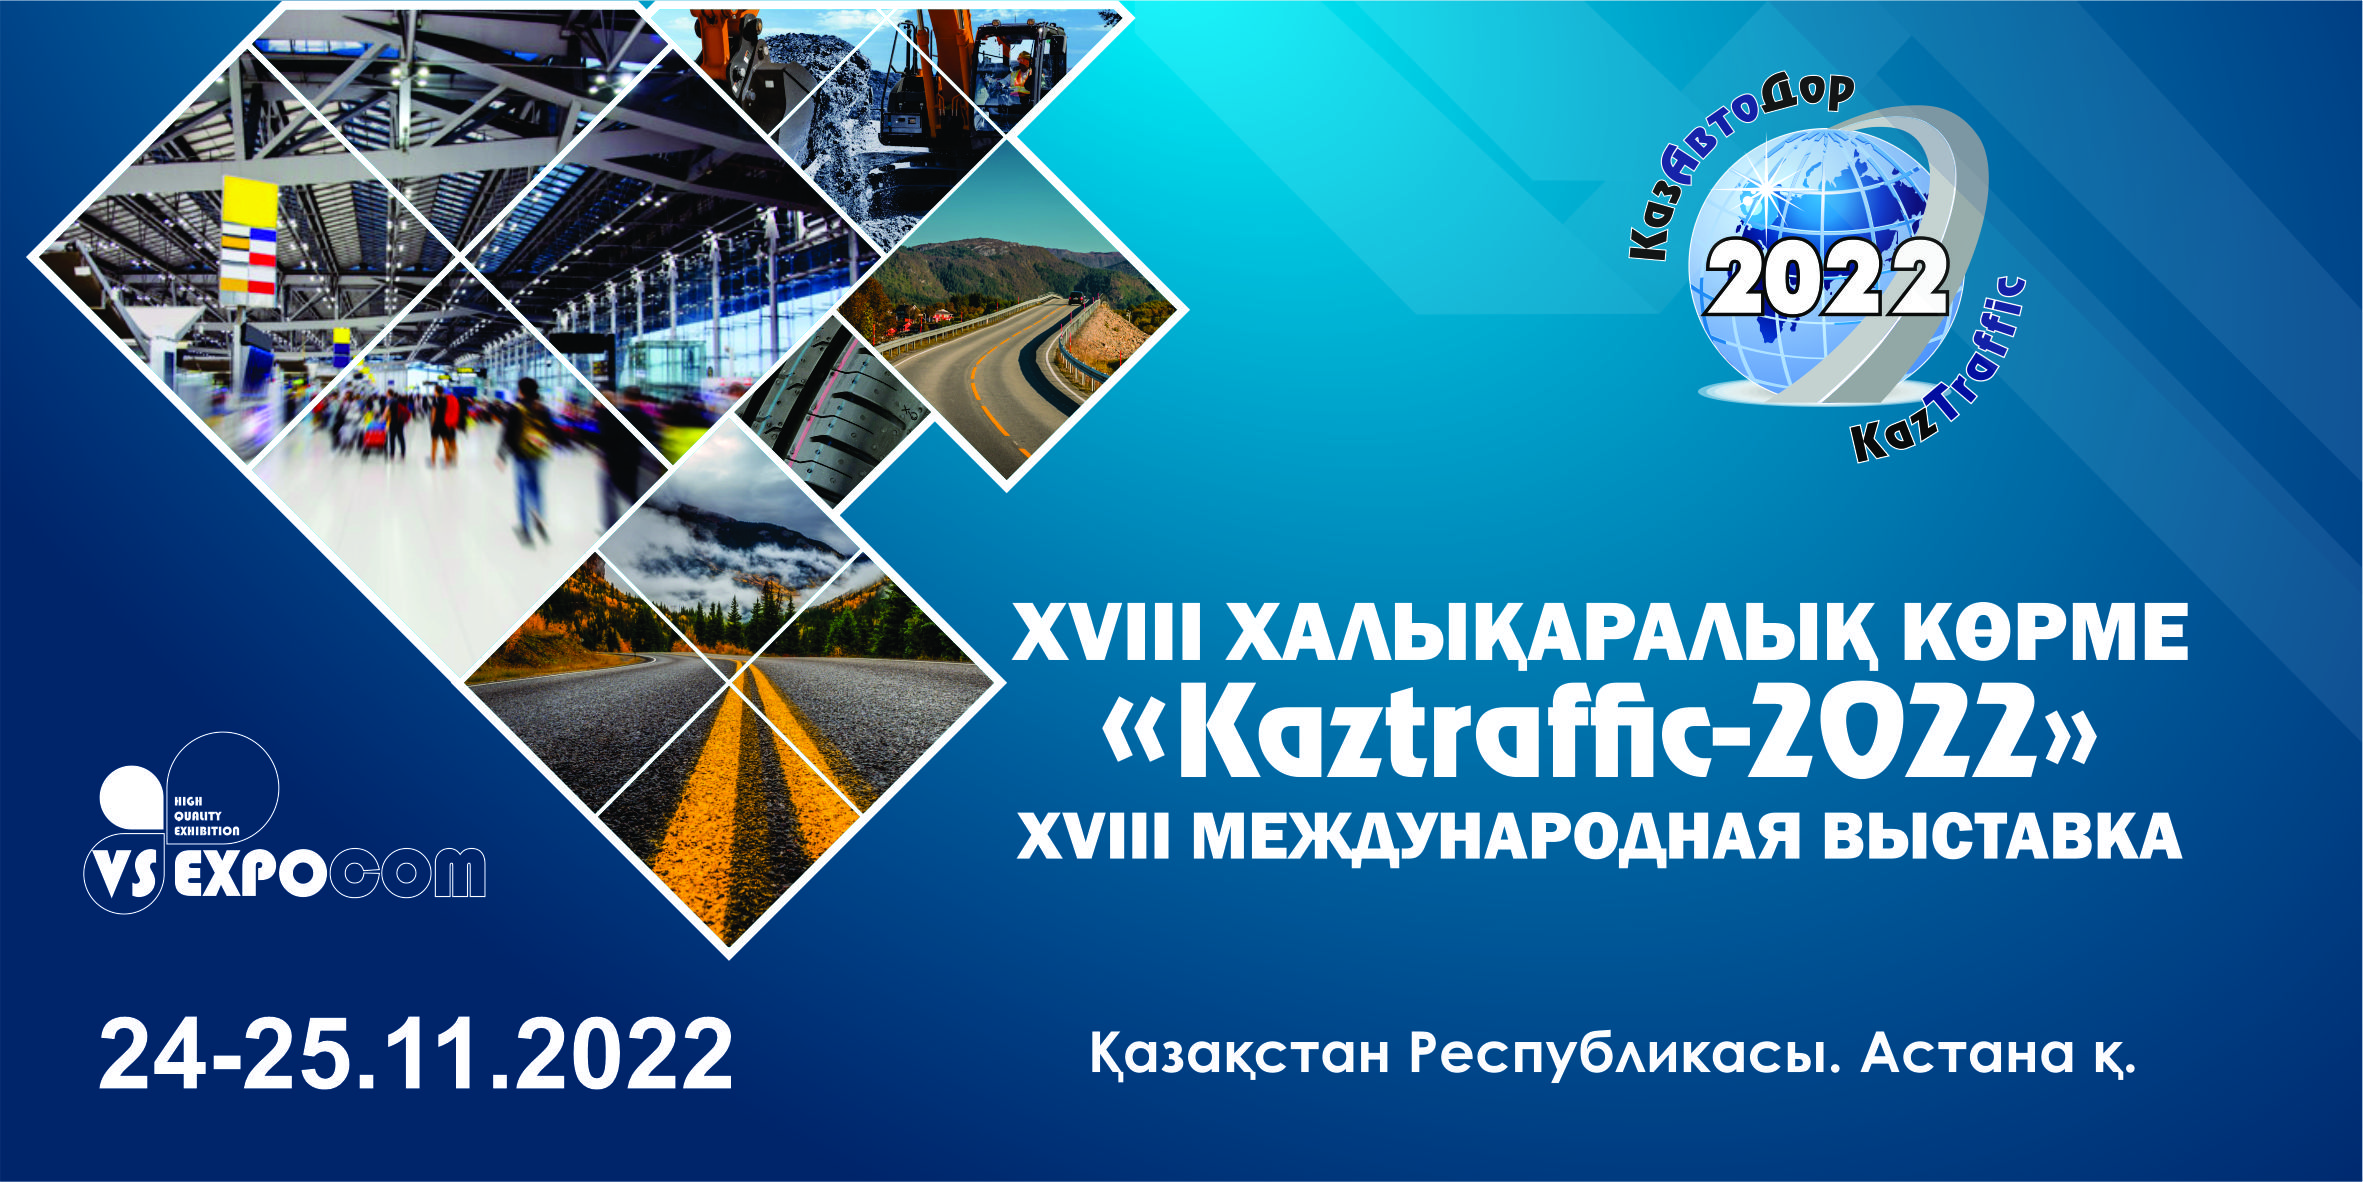 Последние достижения в области дорожного строительства, ремонта, содержания автомобильных дорог представят в МВЦ EXPO